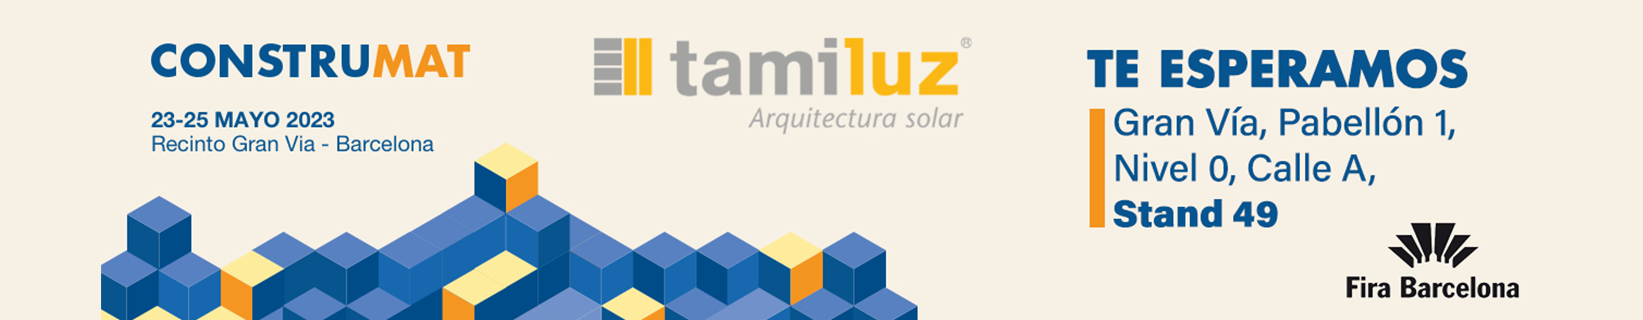 soluciones en protección solar para edificios y fachadas fabricados en aluminio, madera y HPL.